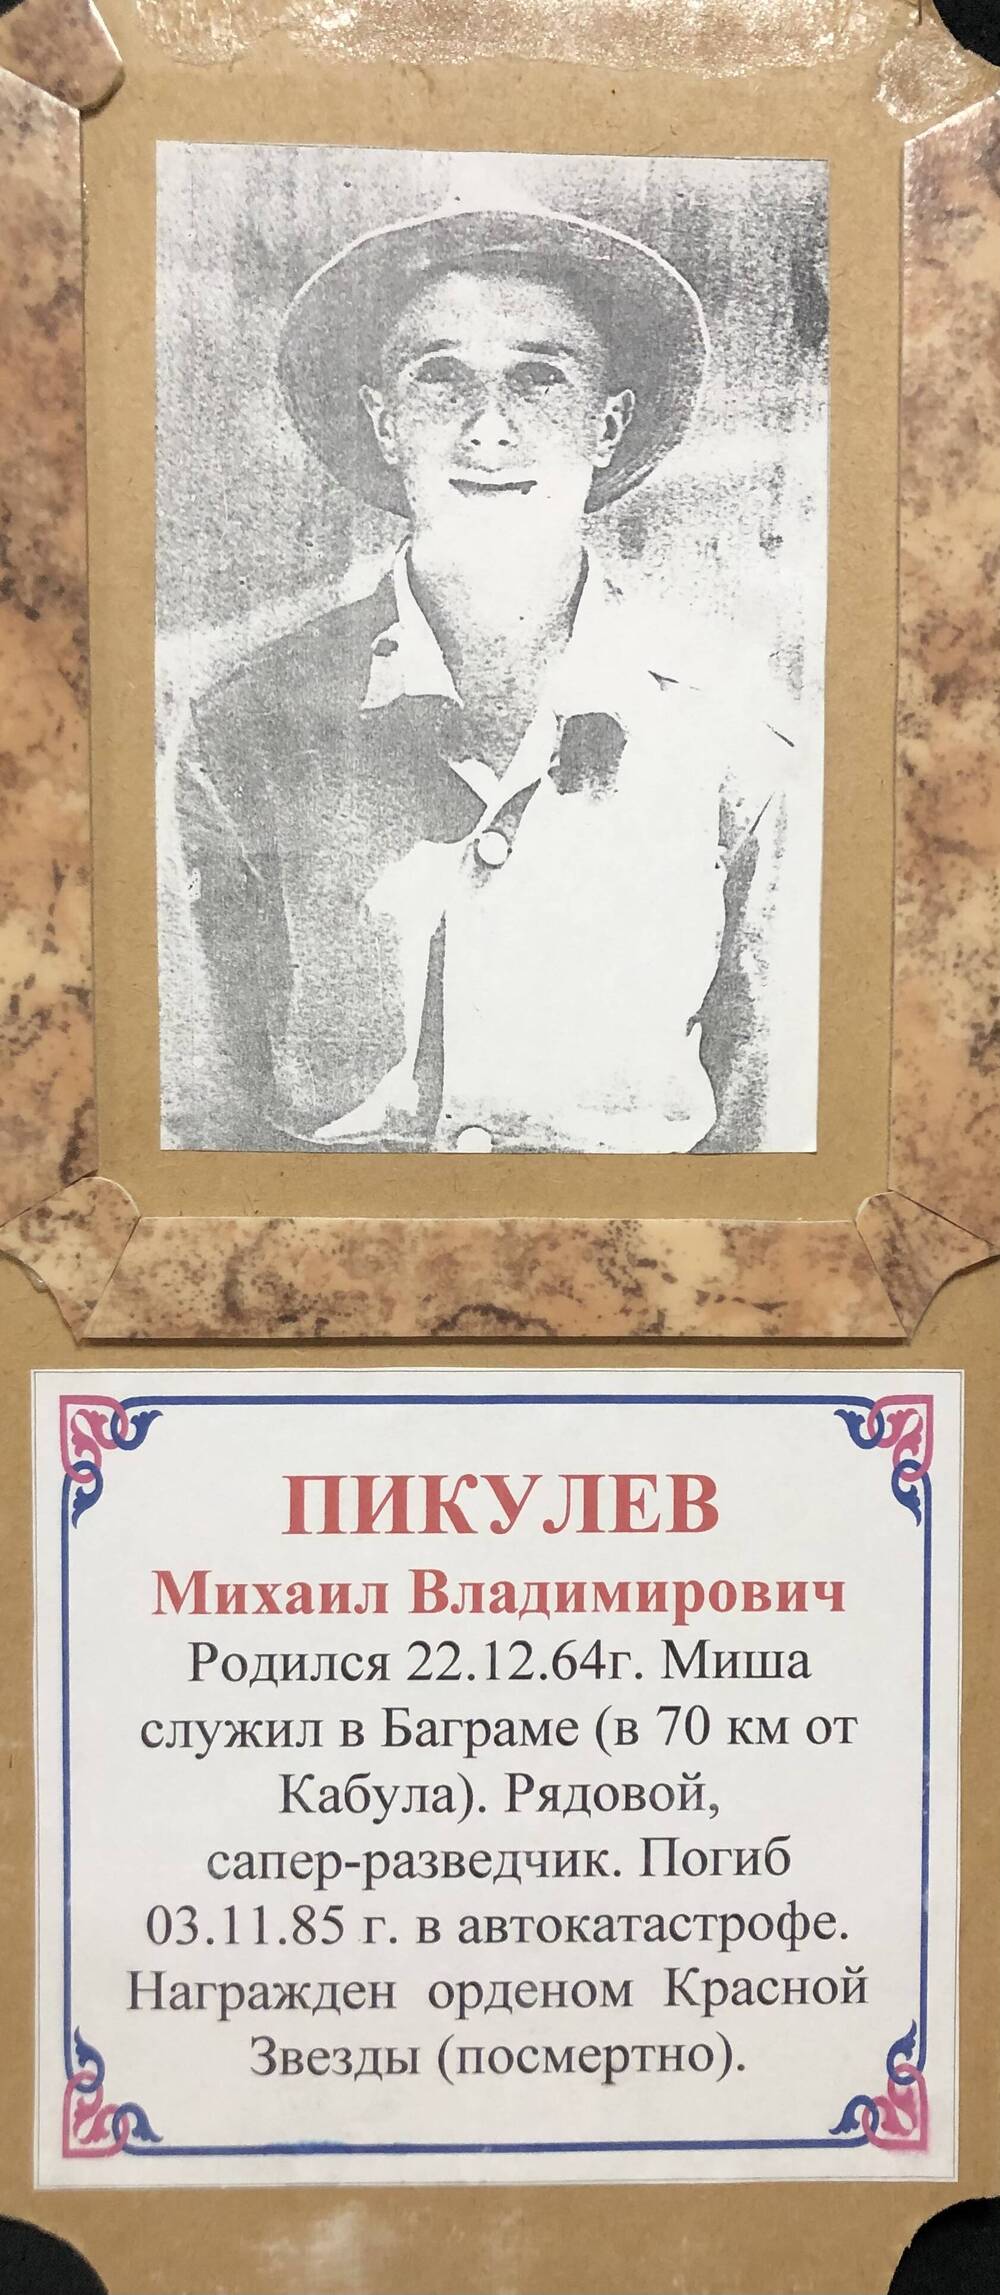 Фото Пикулев М.В. 22.12.1964 г.р. Служил в Баграме. Награжден орденом Красной звезды (посмертно)